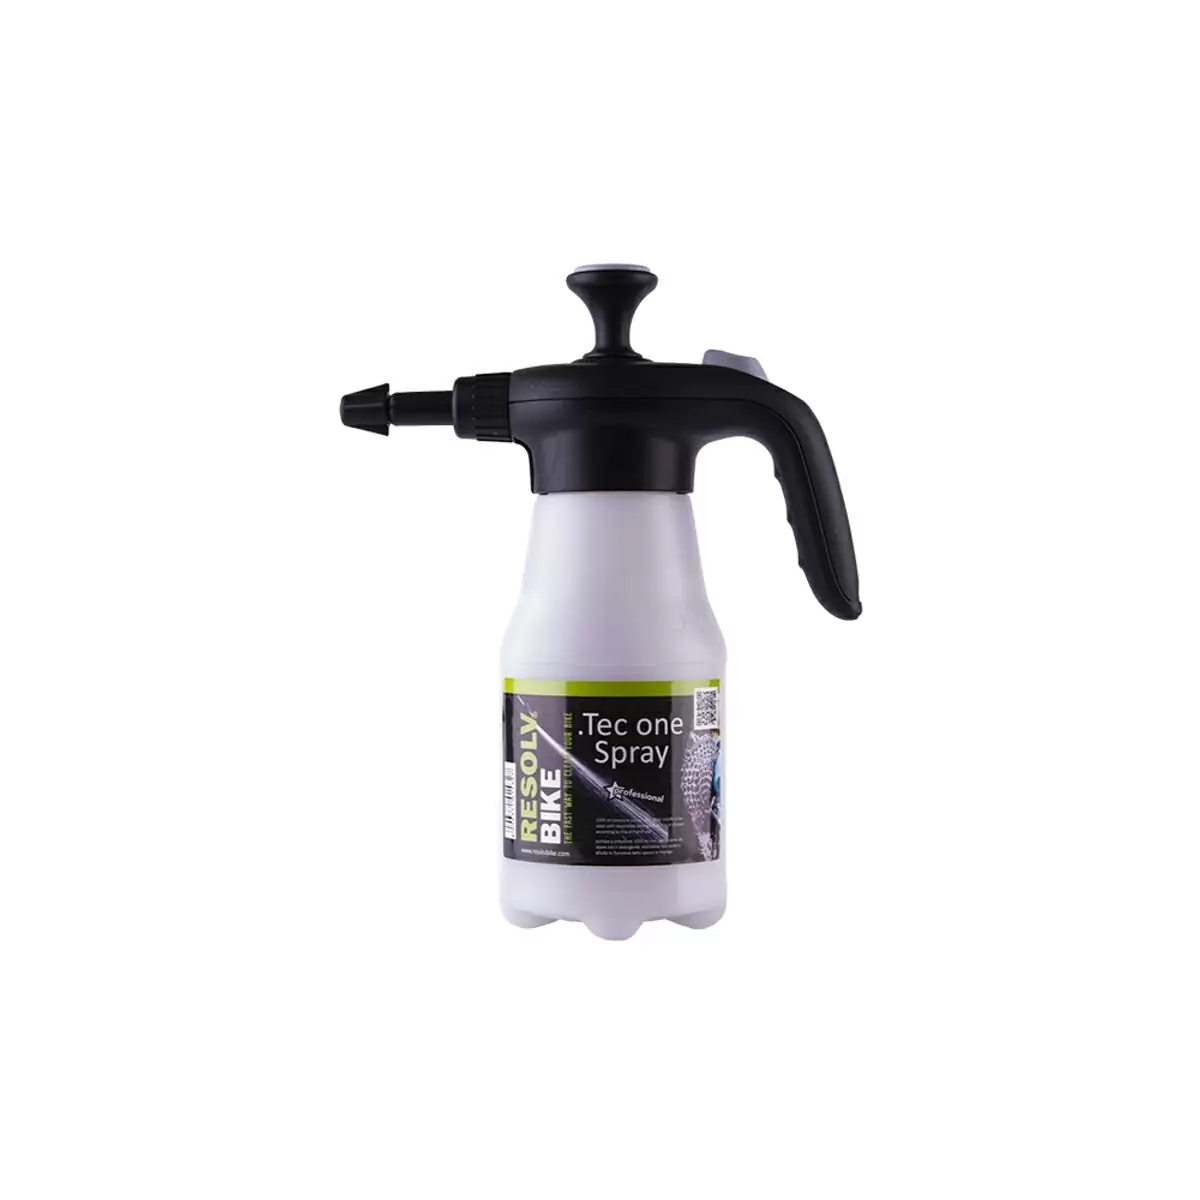 Pompa Professionale A Pressione Spray 1,5L - image